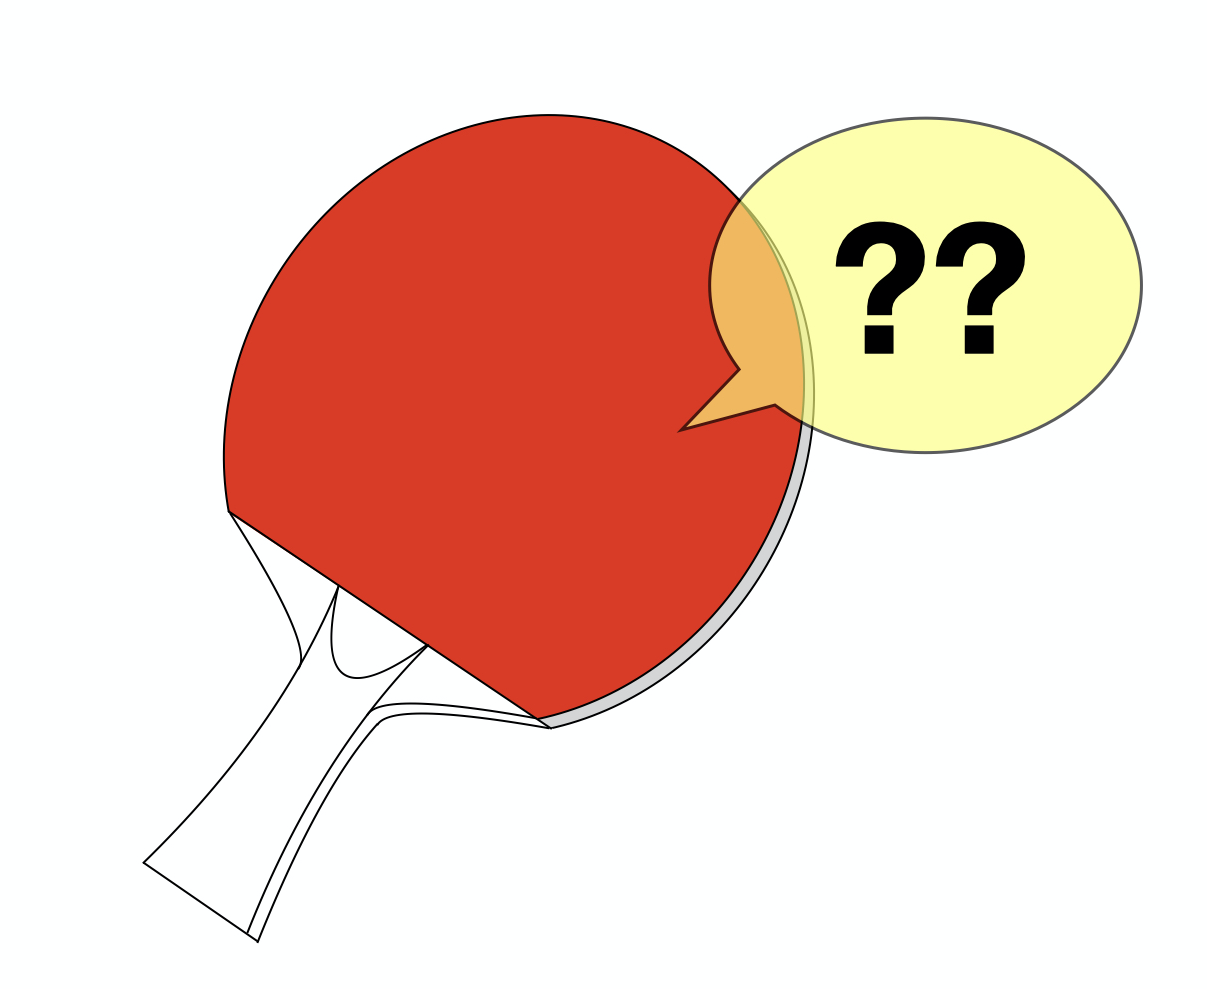 卓球ラケットの黒と赤の違いは何ですか？